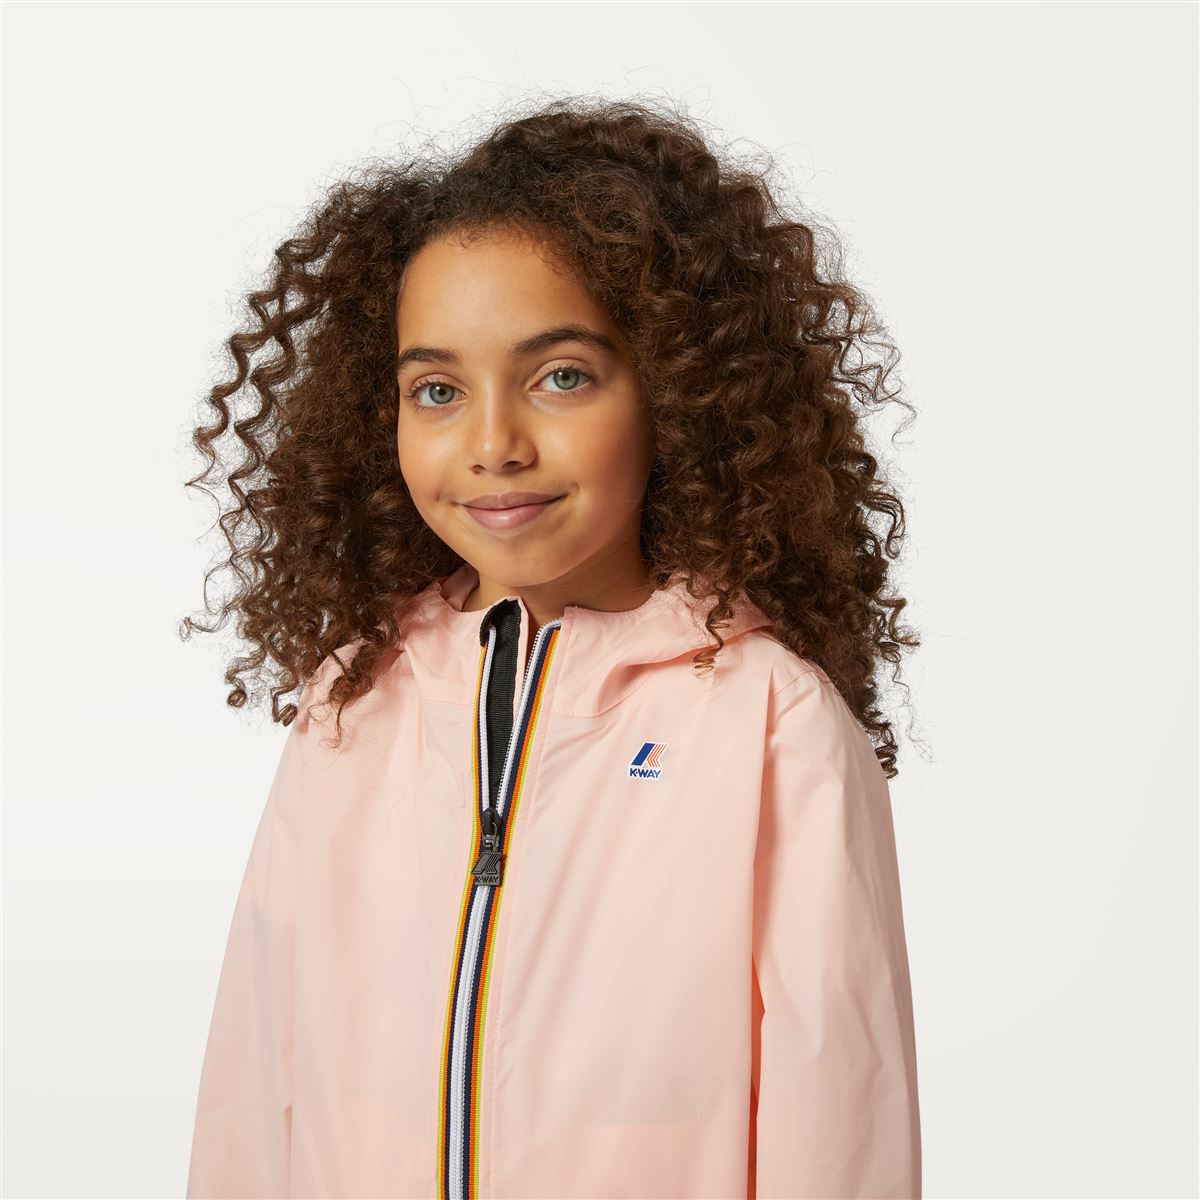 Claude - Kids Packable Full Zip Waterproof Rain Jacket in Pink Dafne